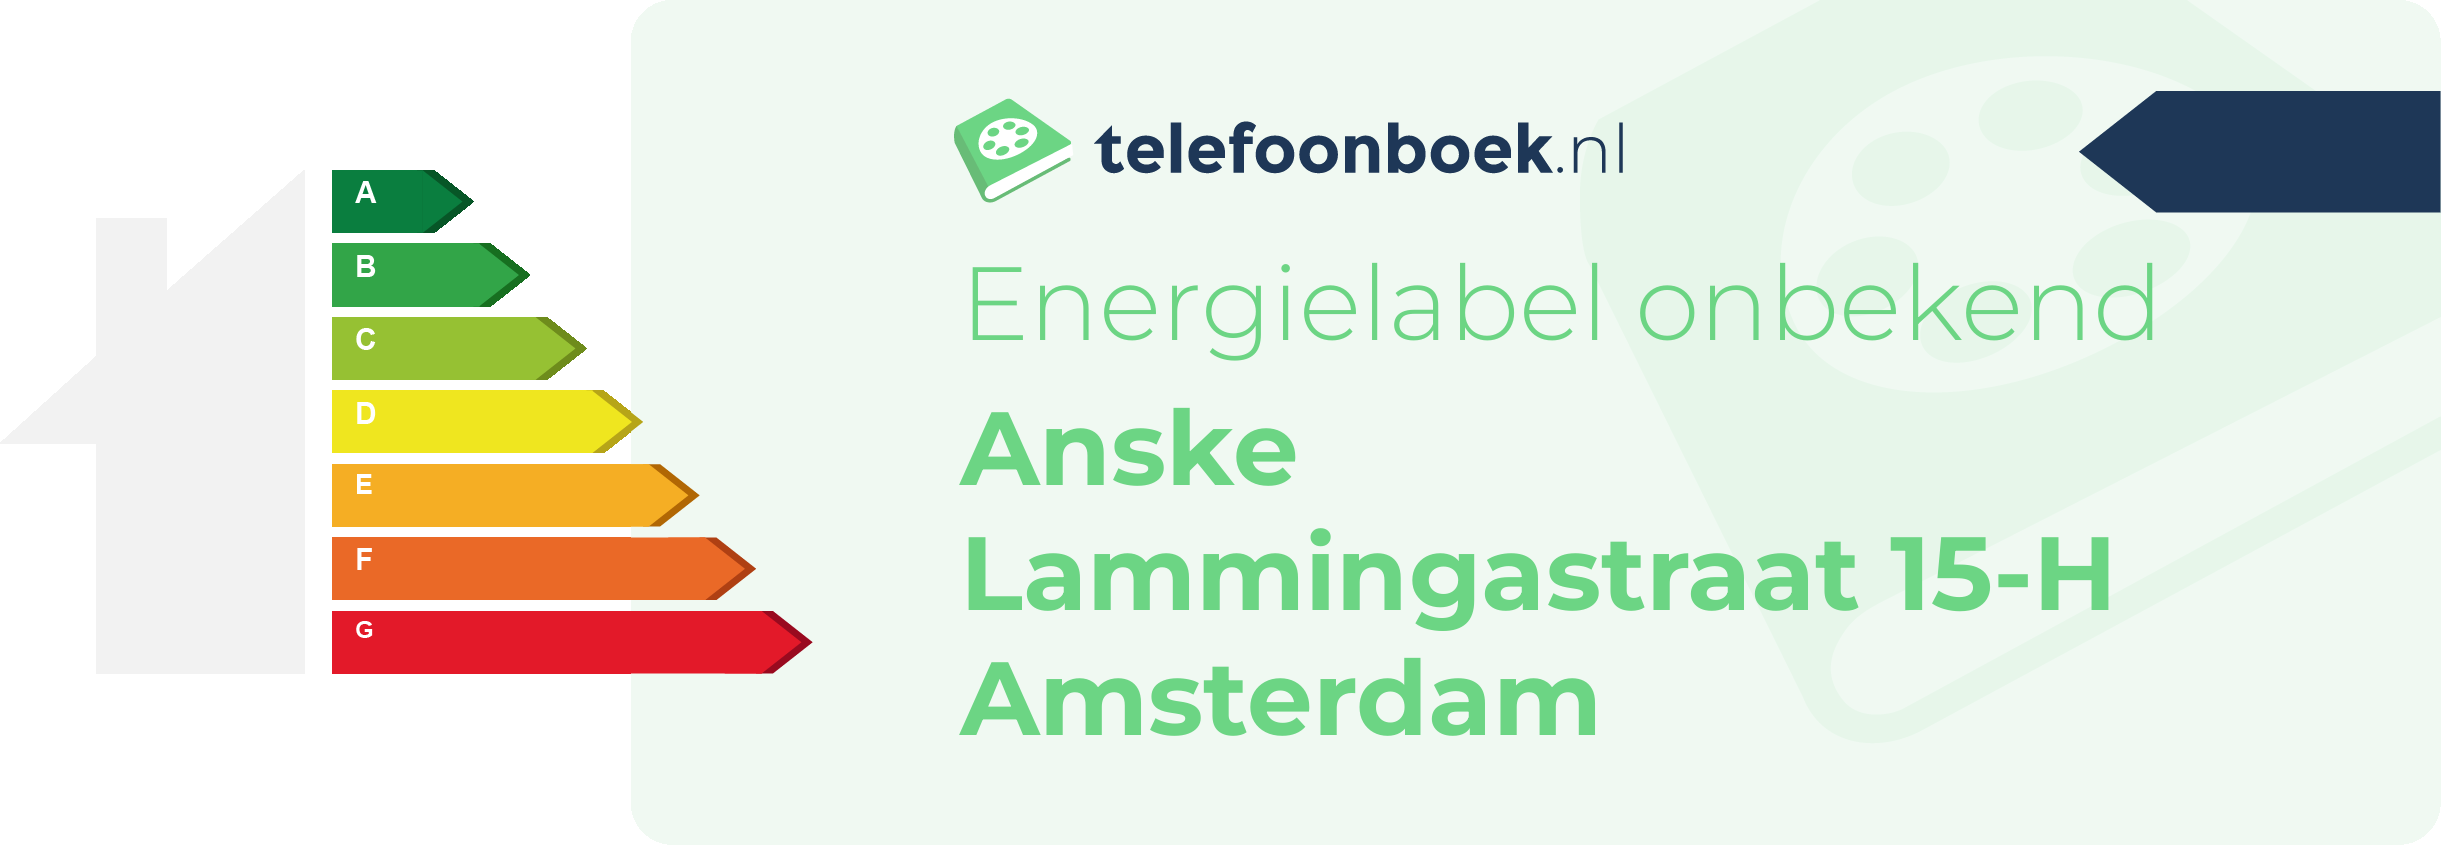 Energielabel Anske Lammingastraat 15-H Amsterdam